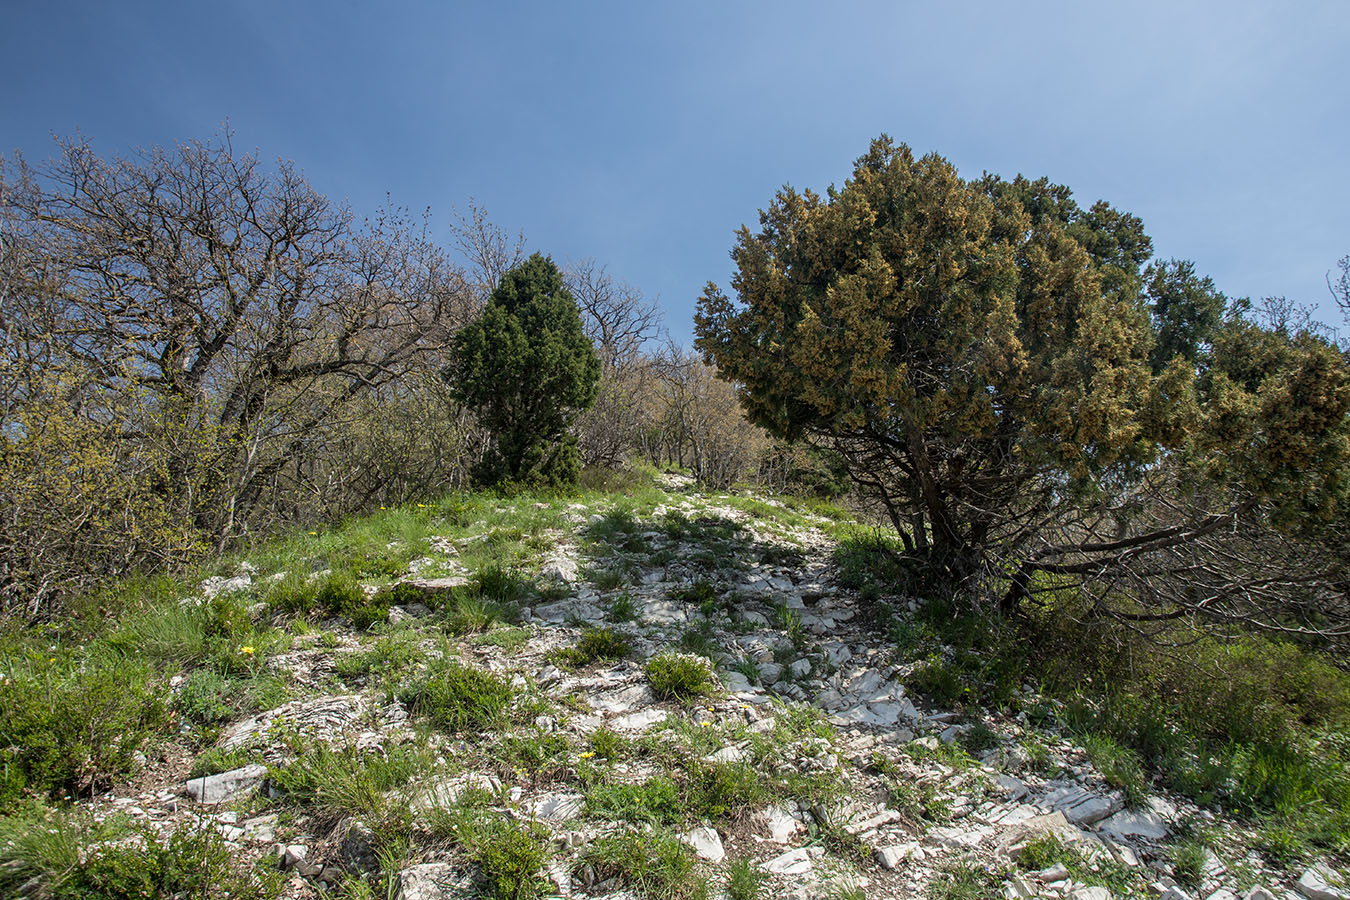 Андреевский перевал, image of landscape/habitat.